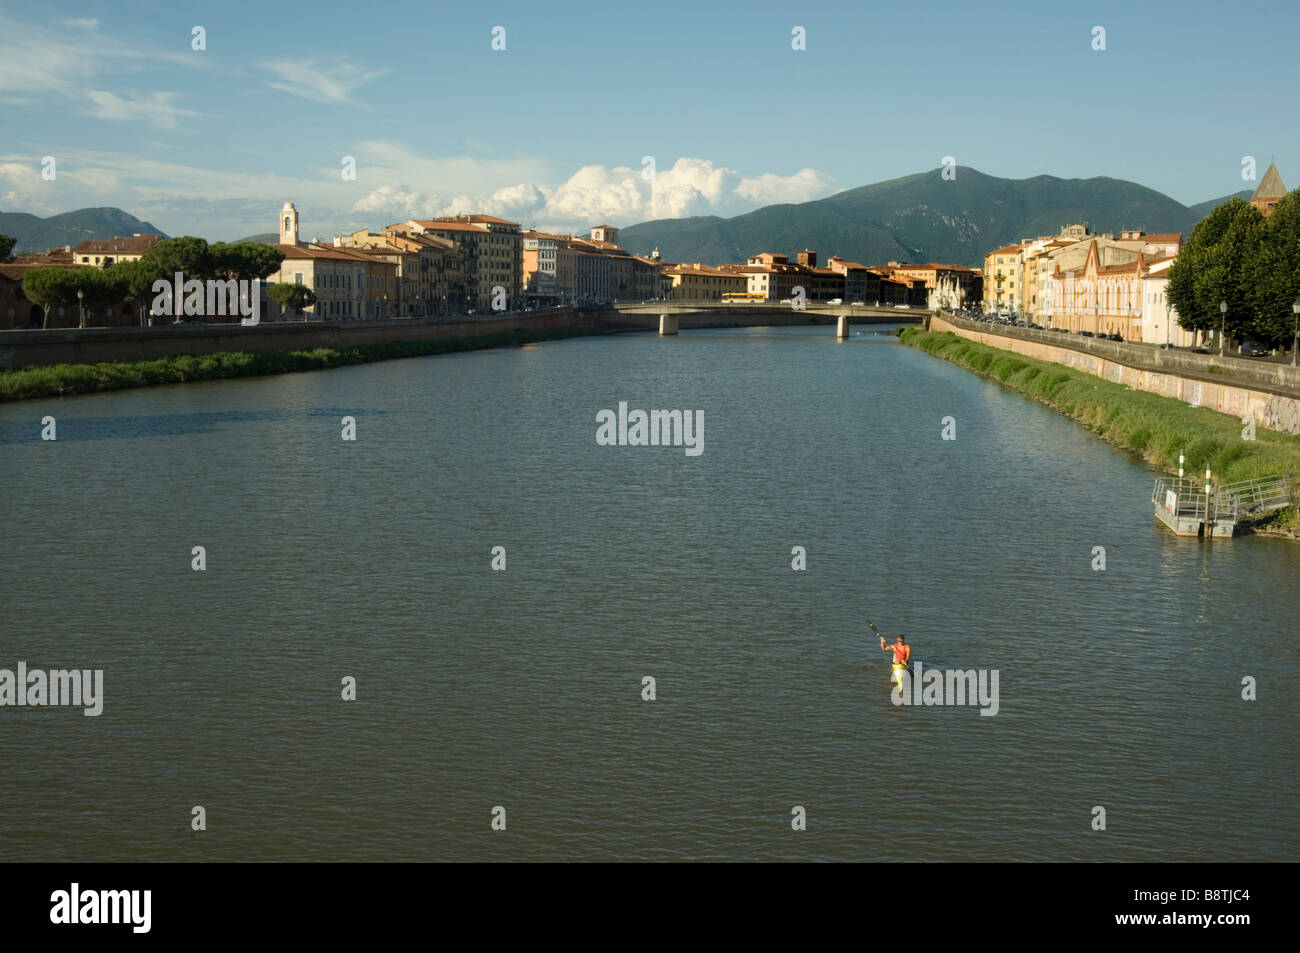 The Arno River in Pisa Italy Stock Photo